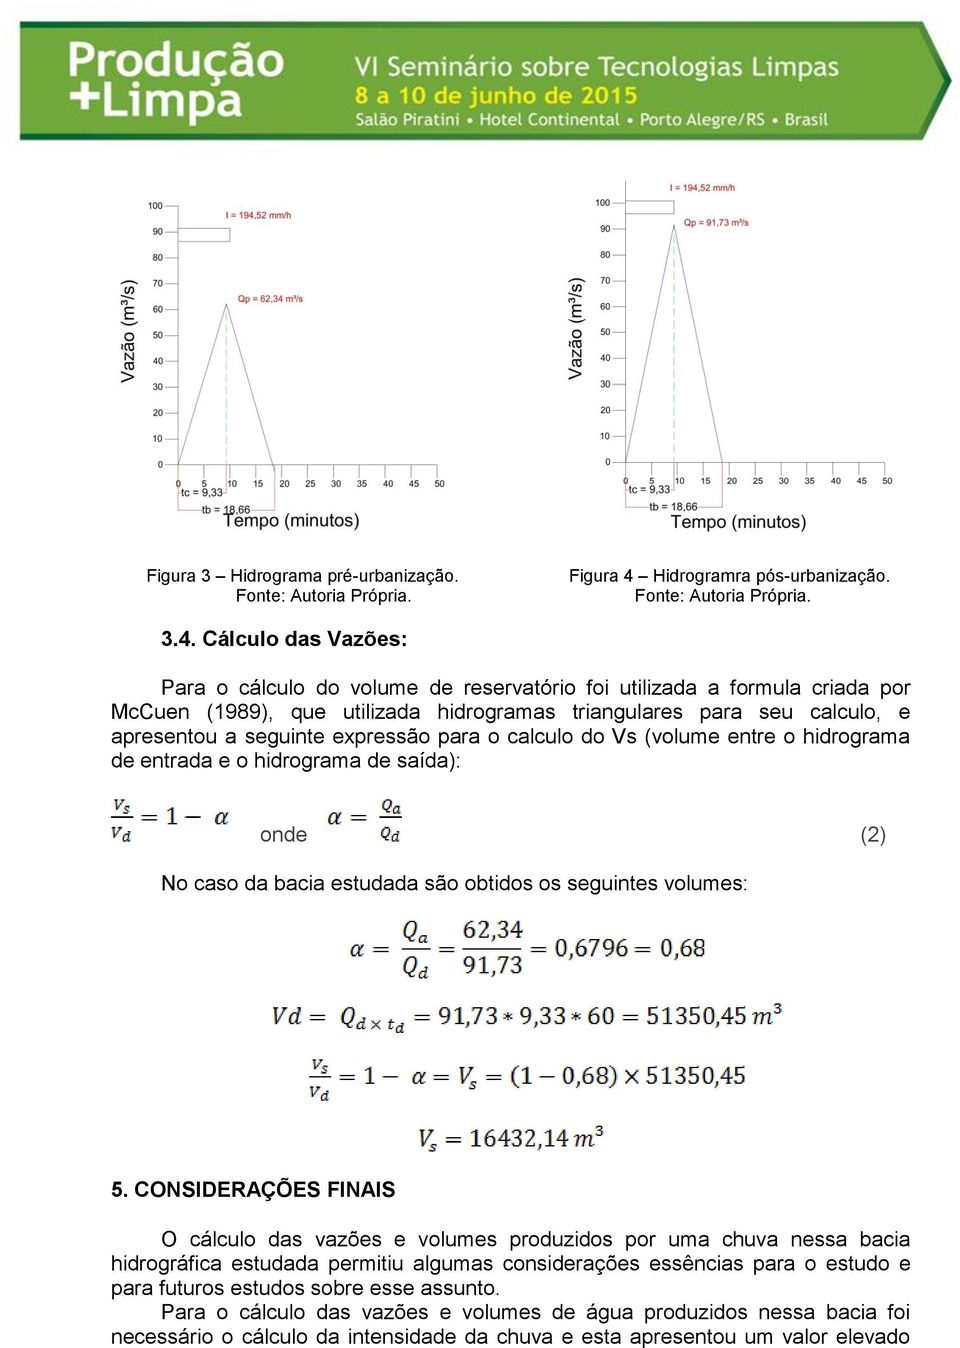 Cálculo das Vazões: Para o cálculo do volume de reservatório foi utilizada a formula criada por McCuen (1989), que utilizada hidrogramas triangulares para seu calculo, e apresentou a seguinte